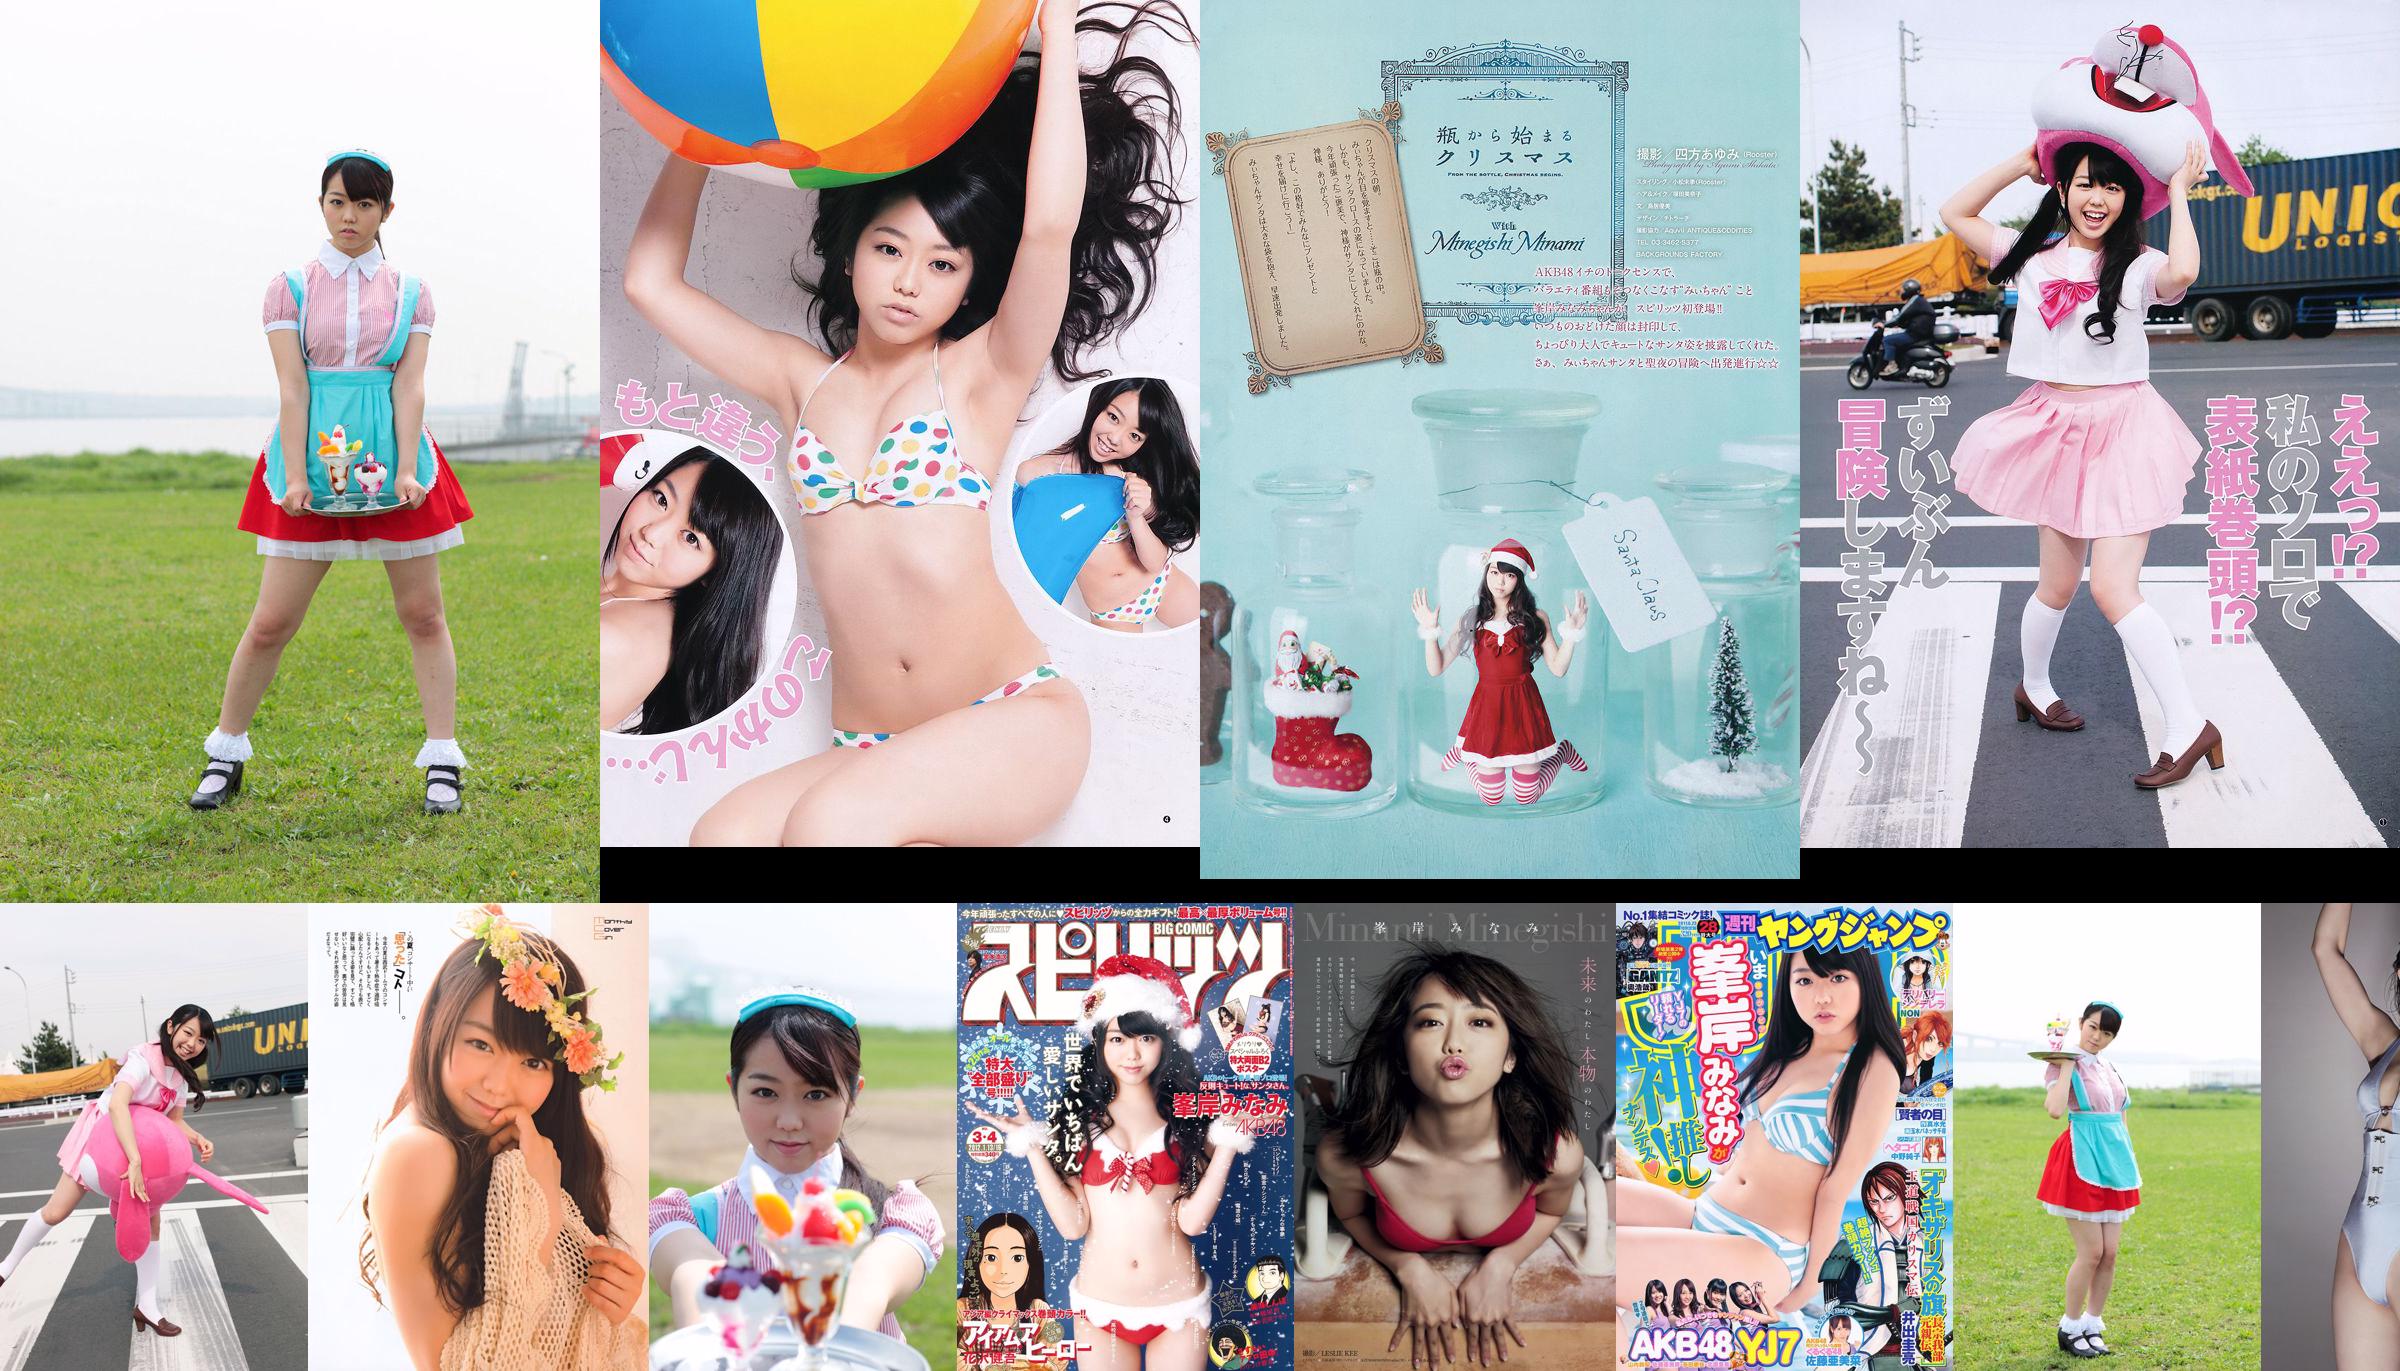 [Wöchentliche große Comic-Geister] Minaki Minegishi 2012 No.03-04 Photo Magazine No.e7af95 Seite 1